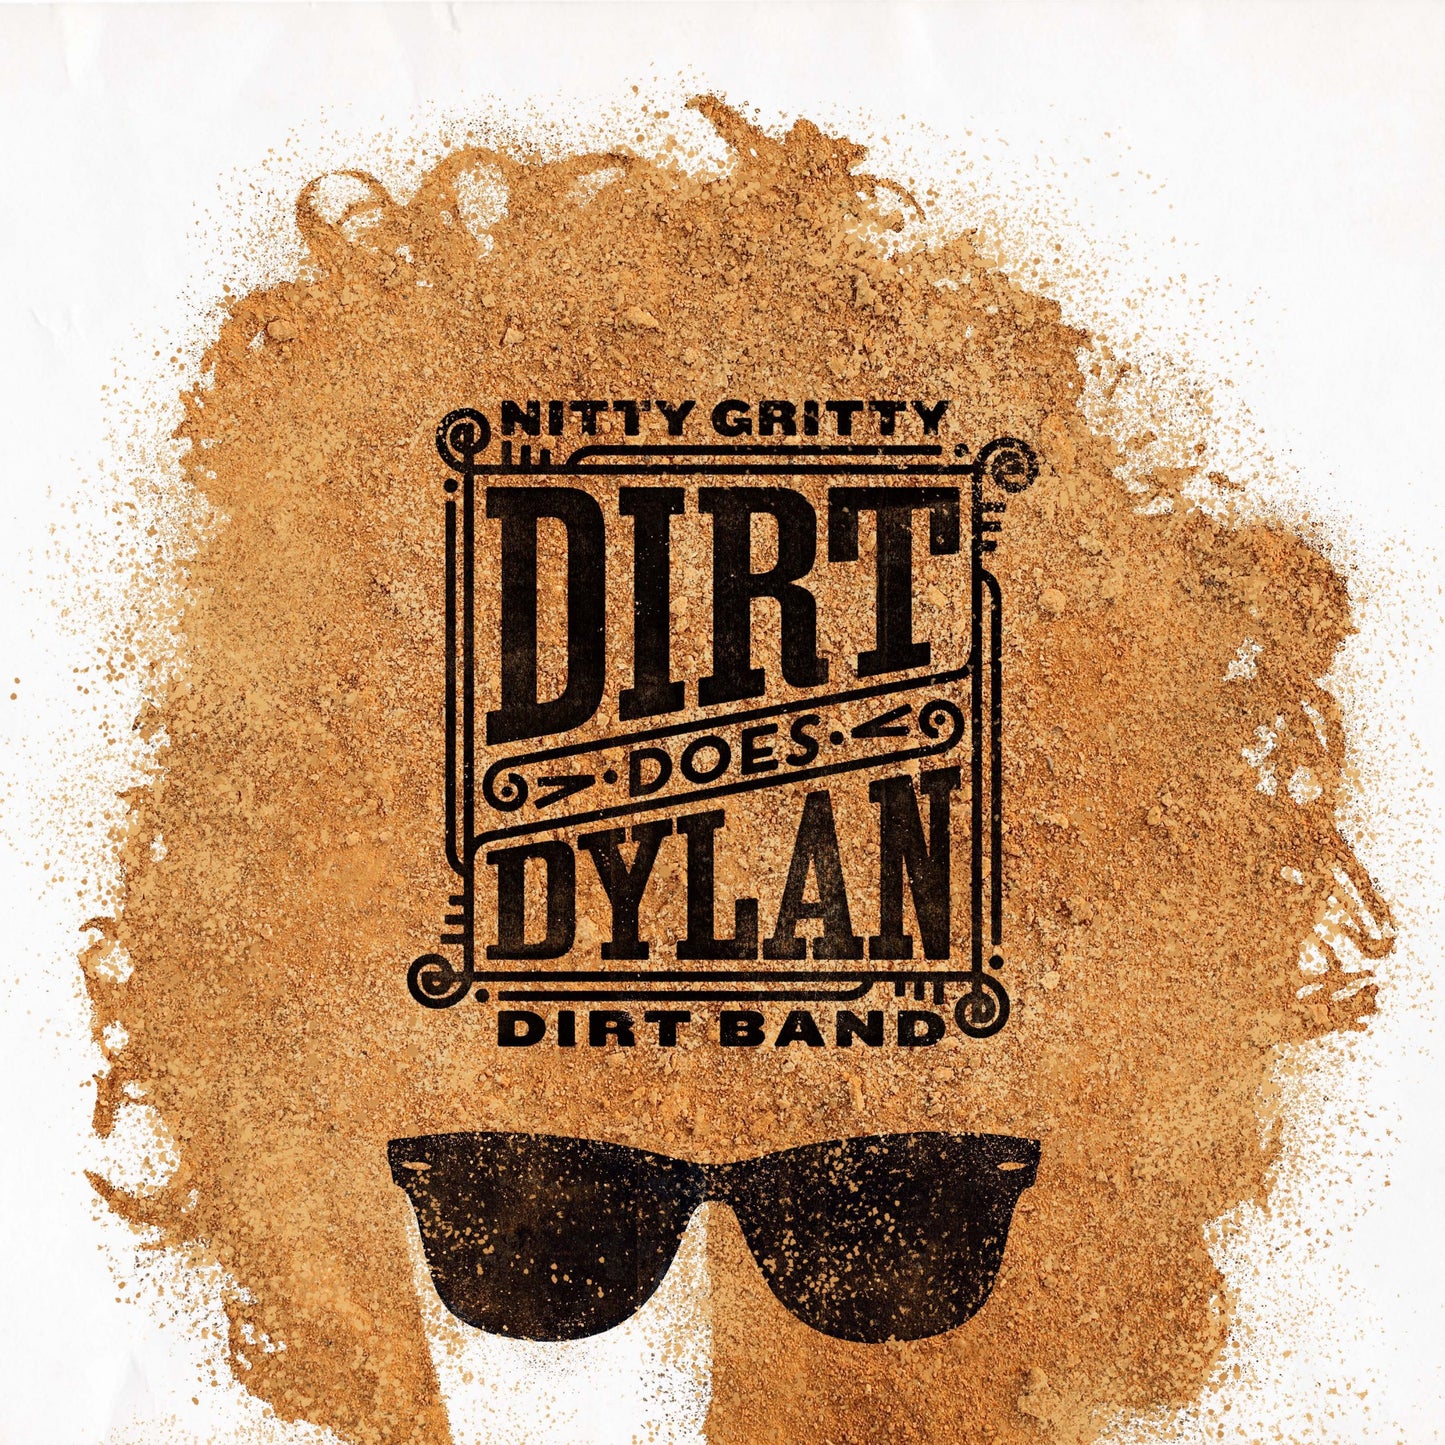 Dirt Does Dylan Vinyl